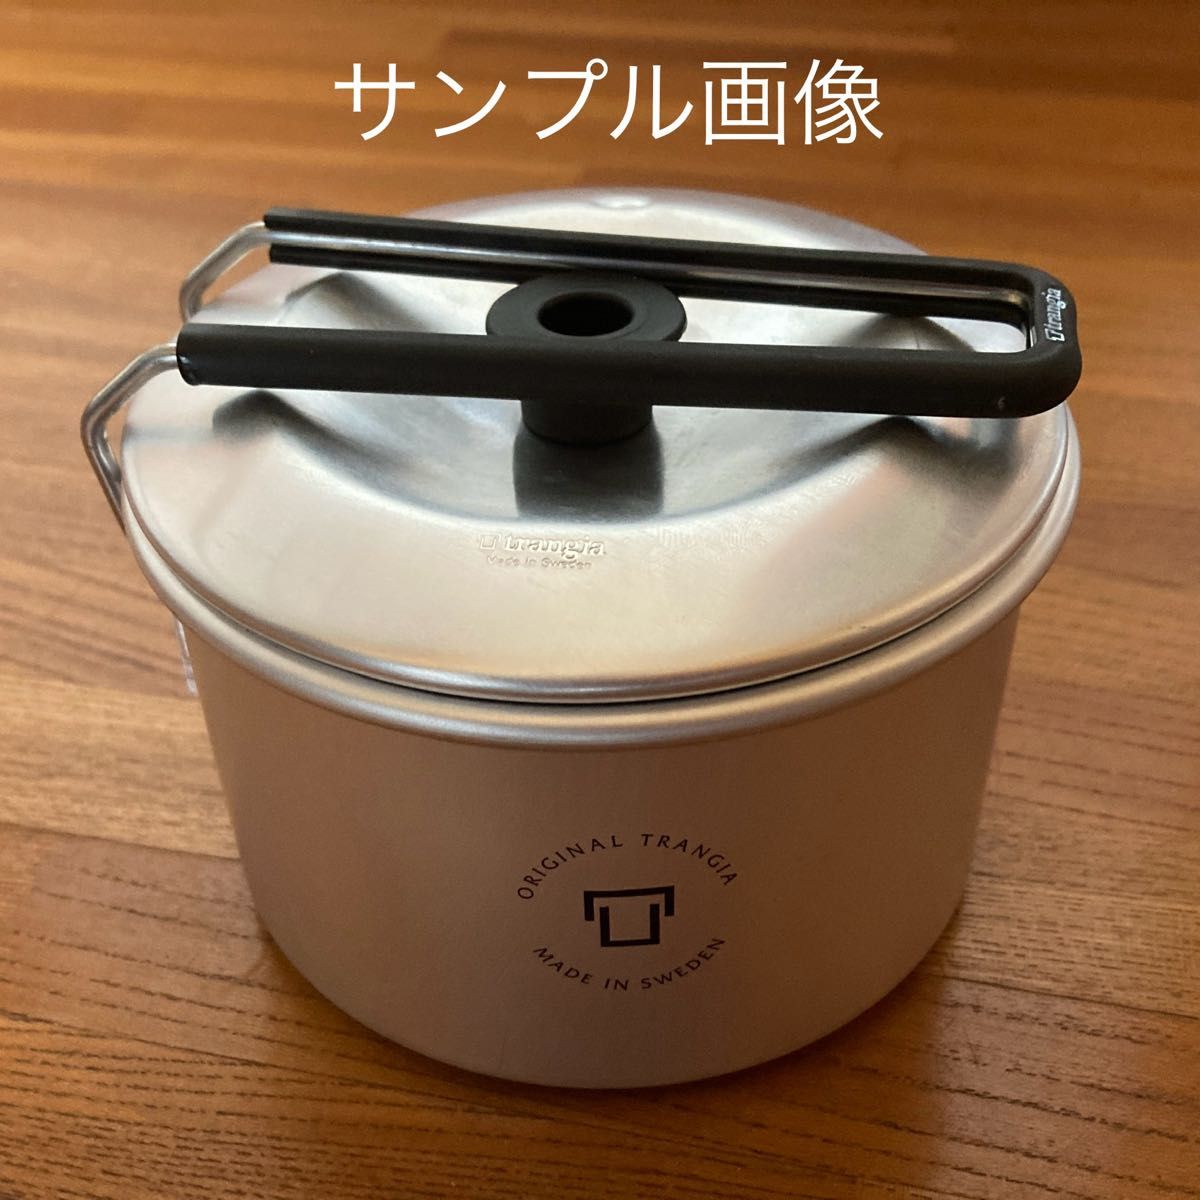 新商品 Trangia T-CUP With LID 赤 トランギア